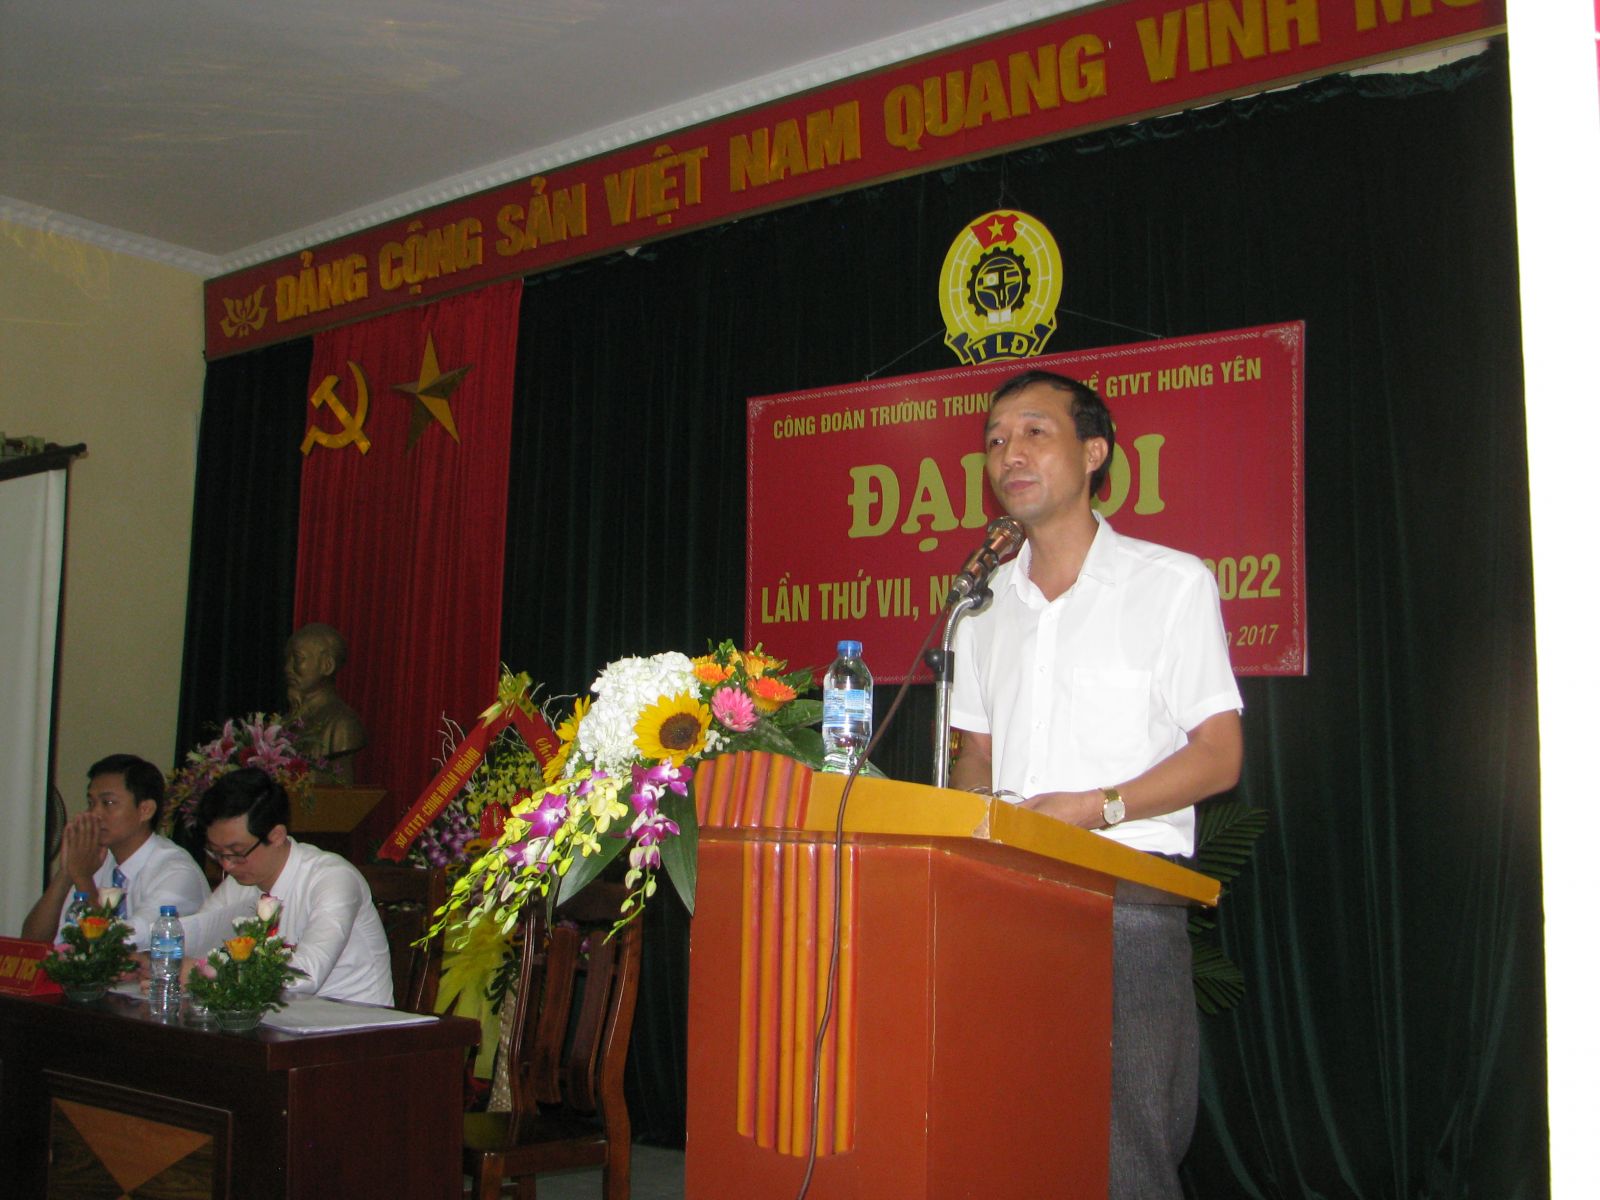 Đại hội Công đoàn cơ sở Trường Trung cấp nghề GTVT Hưng Yên Khóa VII, nhiệm kỳ 2017 – 2022